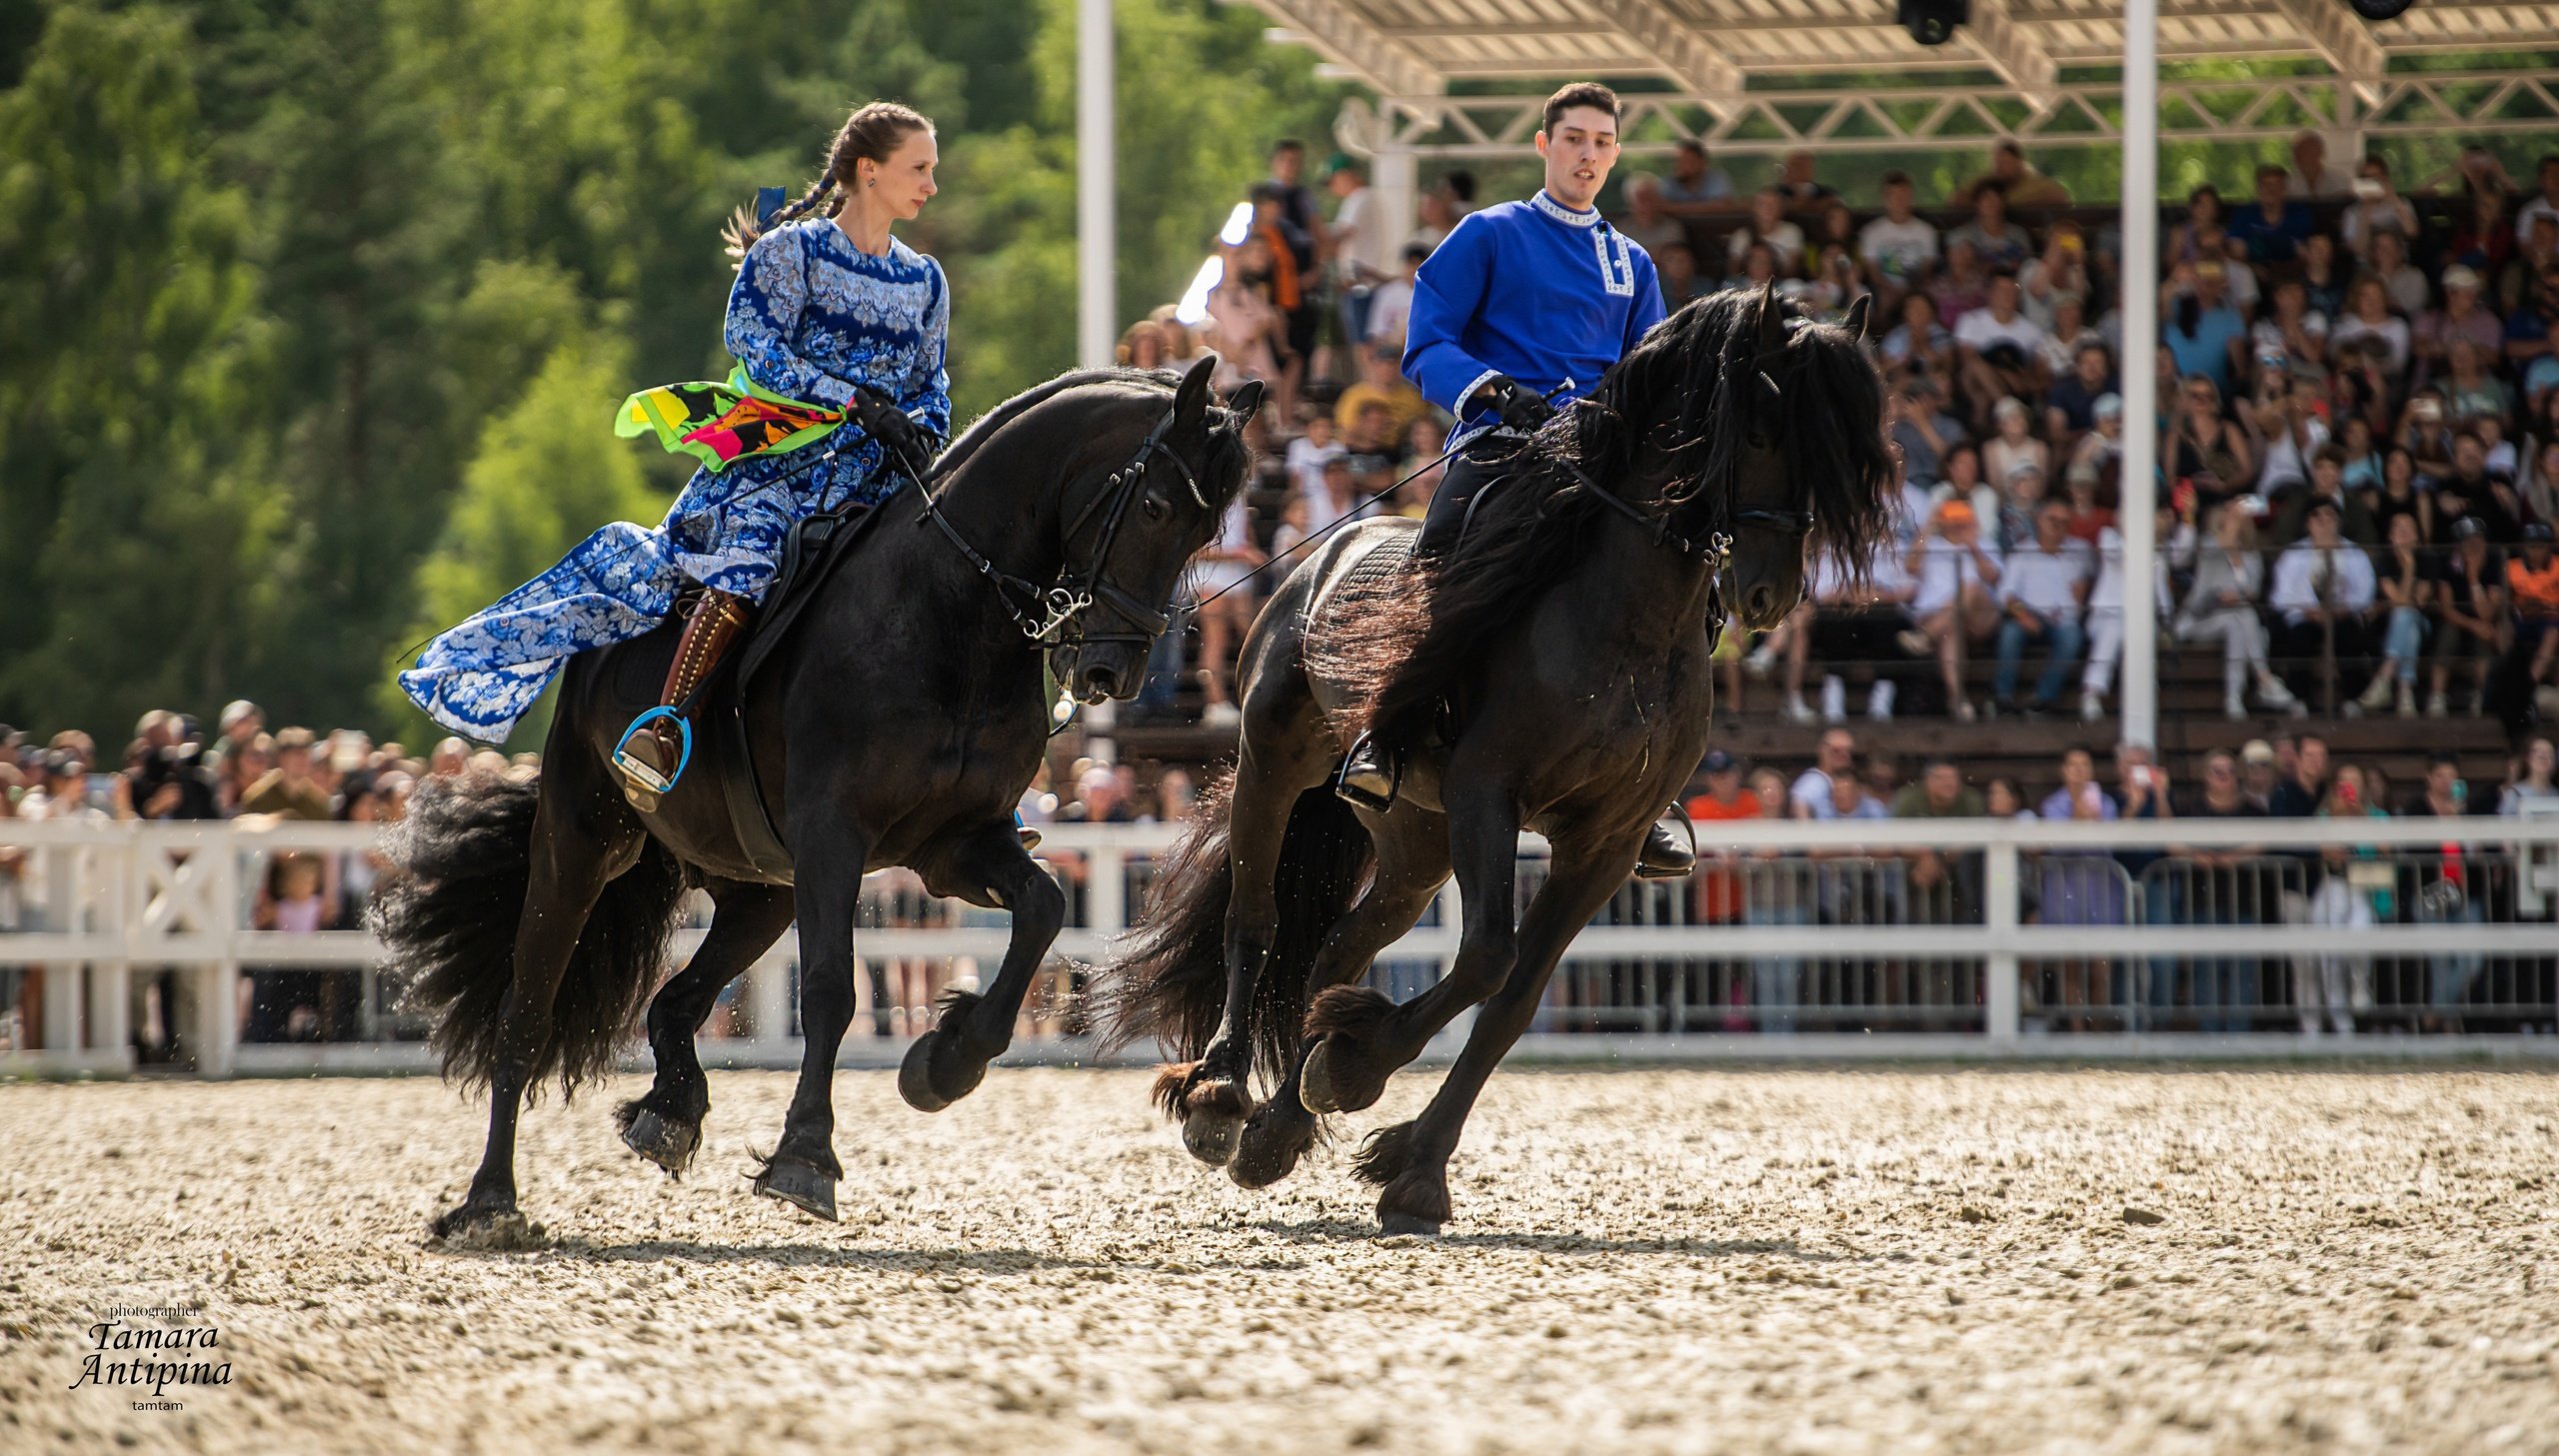 Порядка 17 тысяч любителей лошадей собрались на конном фестивале «Иваново поле» в Подмосковье